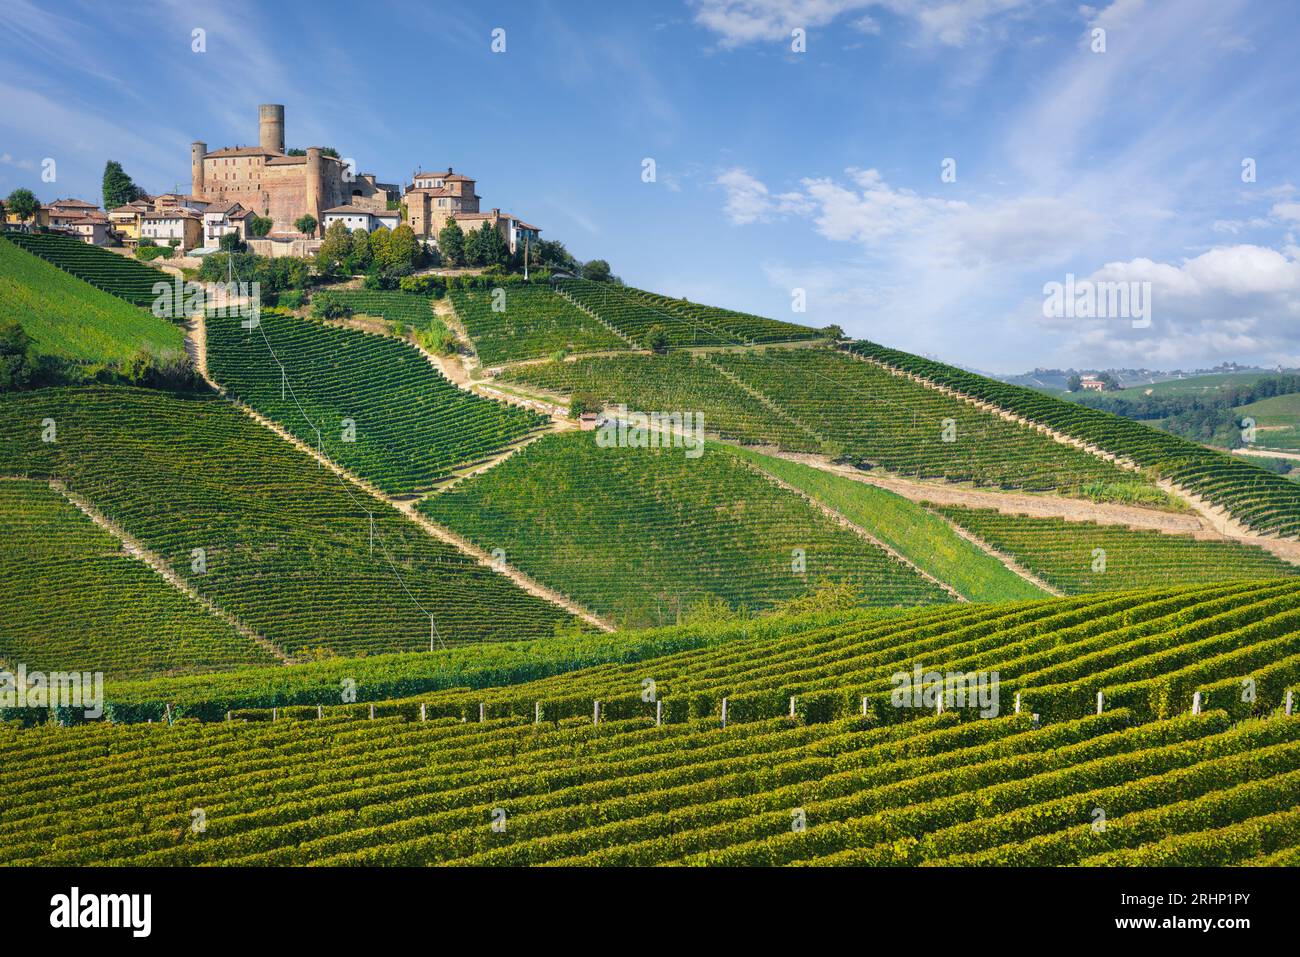 Paysage des vignobles de Langhe et village de Castiglione Falletto au sommet de la colline, site classé au patrimoine mondial de l'UNESCO, région du Piémont, Italie, Europe. Banque D'Images